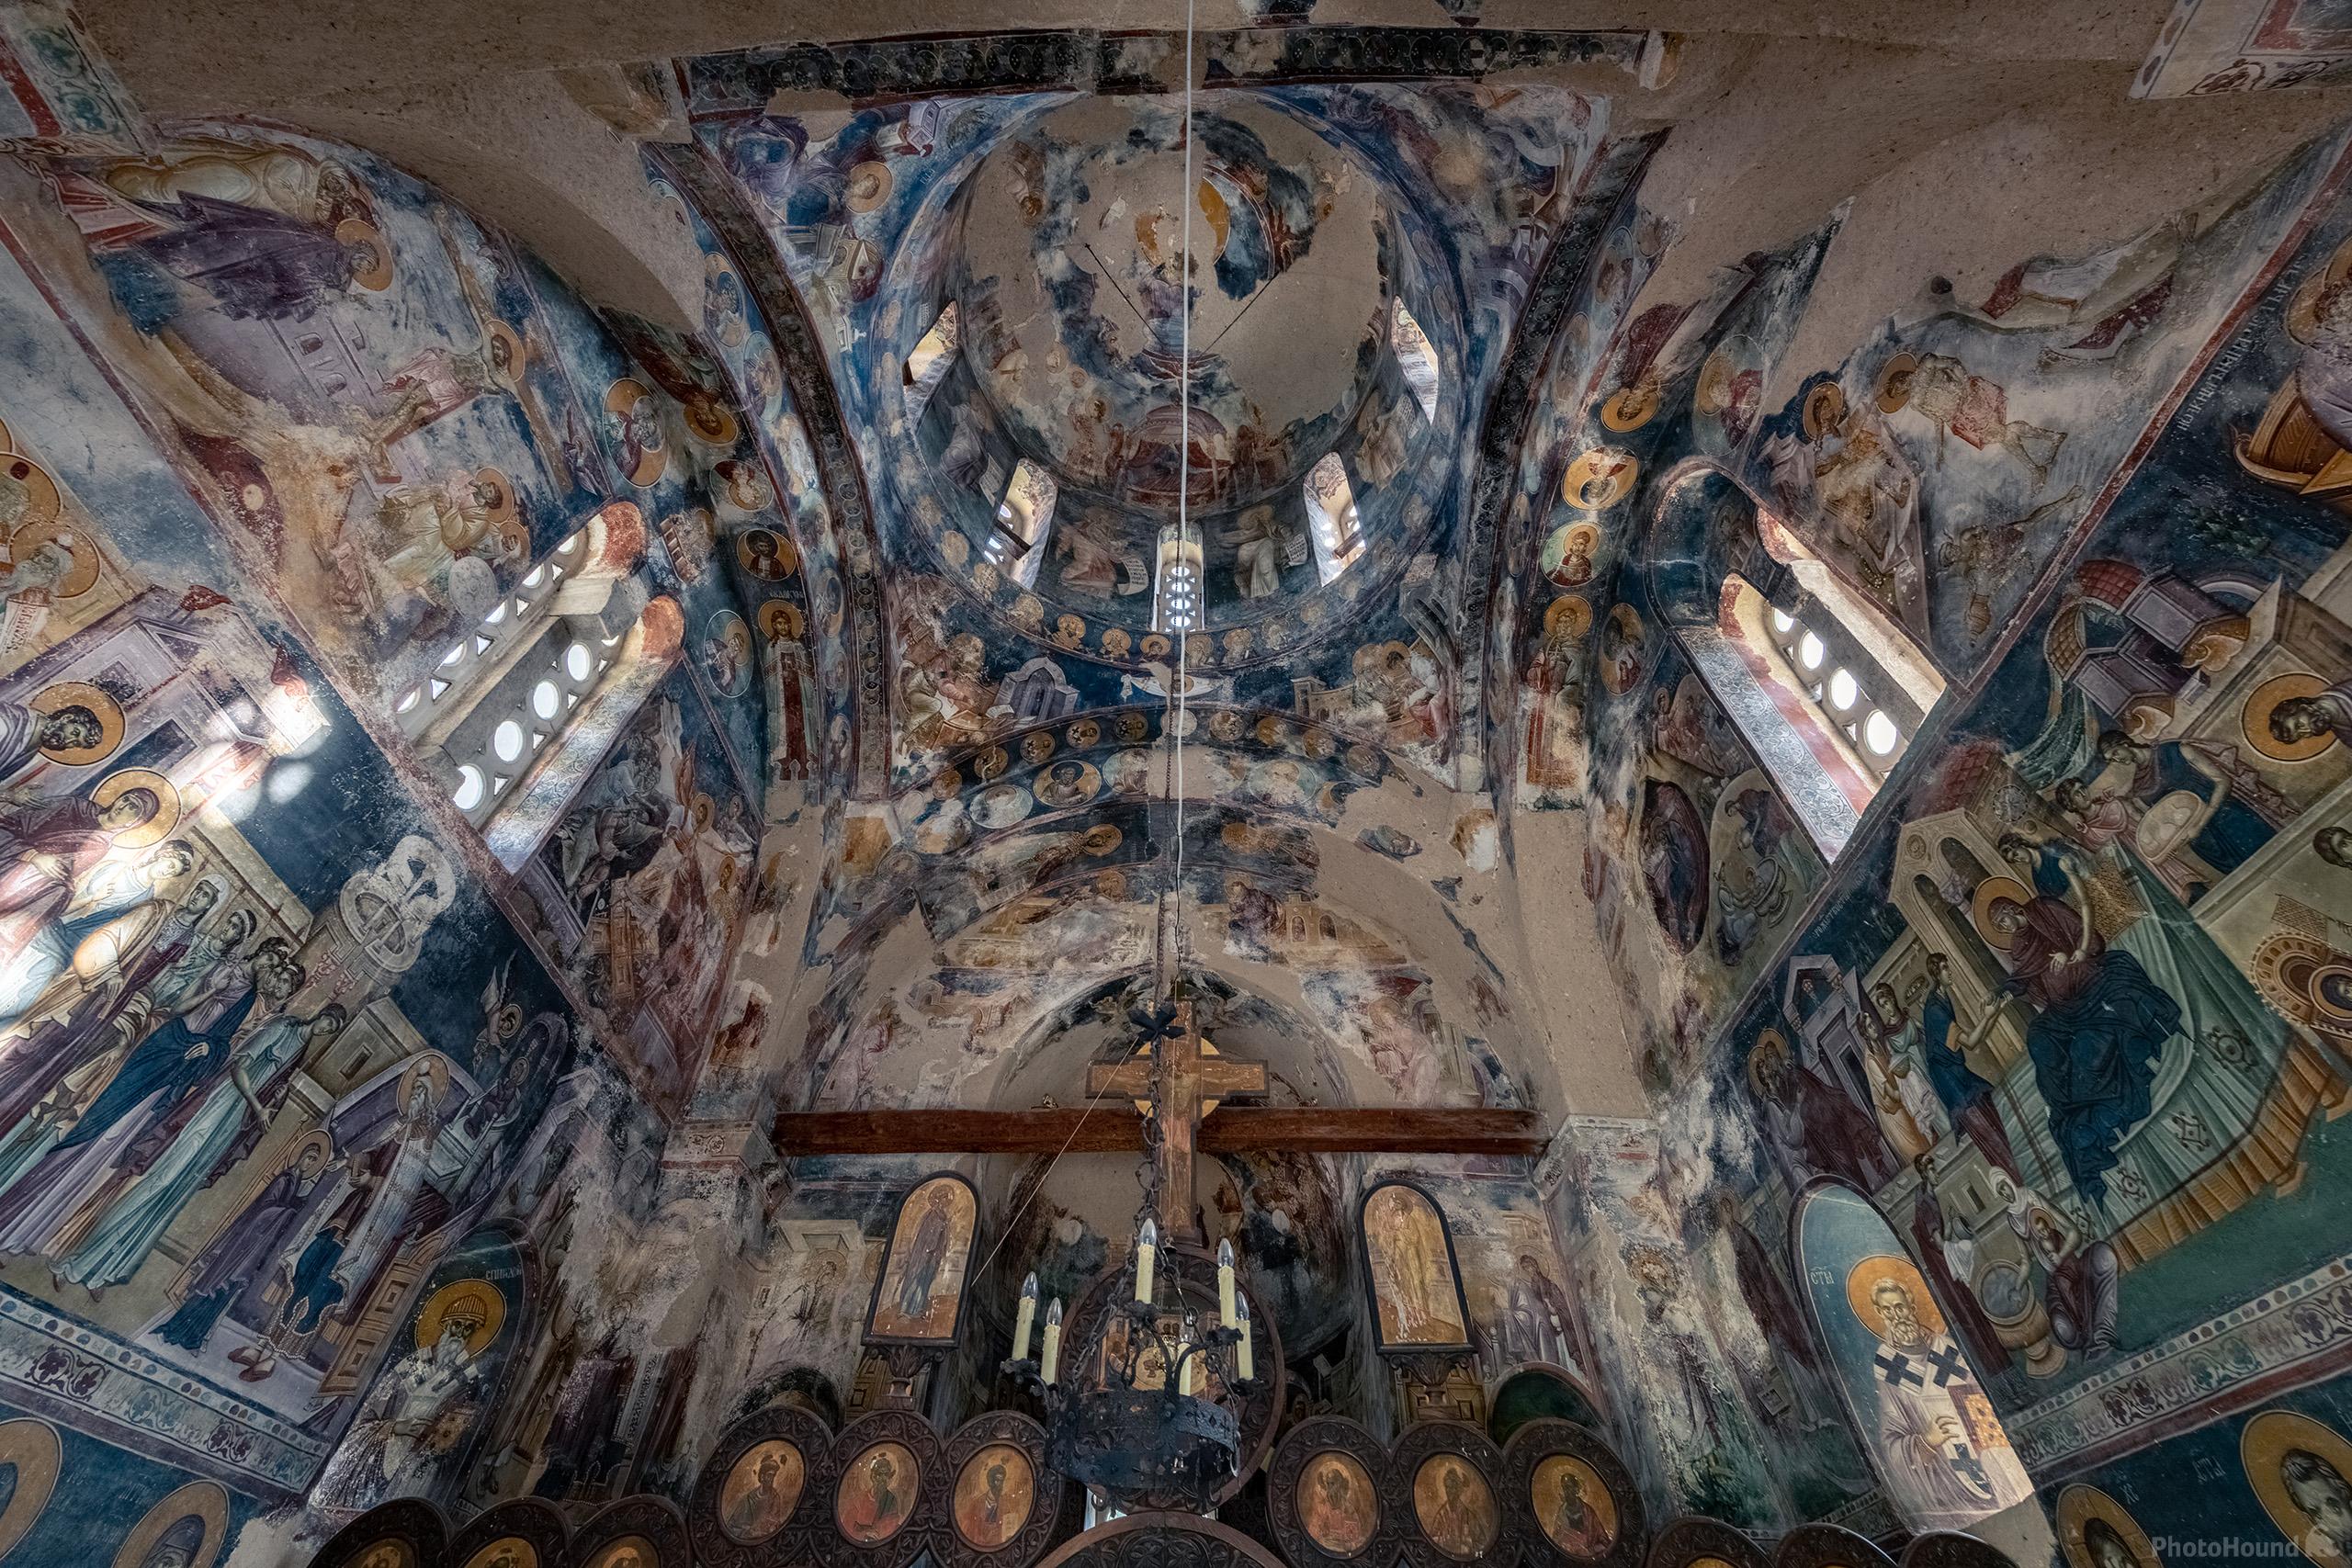 Image of Studenica Monastery by Luka Esenko